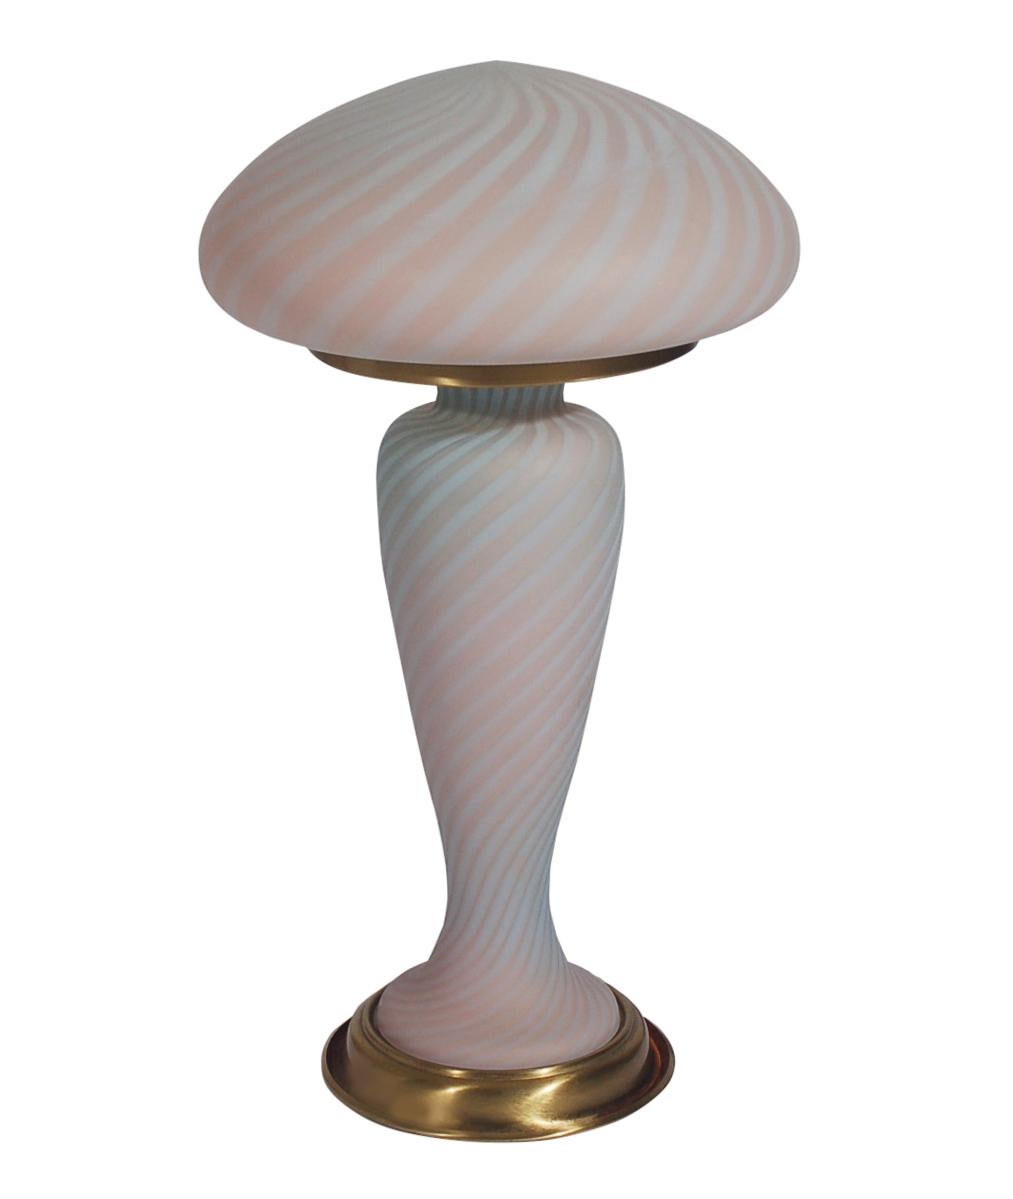 Lampe en verre d'art vintage d'Italie vers les années 1950, attribuée à Murano. Elle présente un design en verre d'art tourbillonnant en deux parties avec des détails en laiton. Testé et fonctionnant.